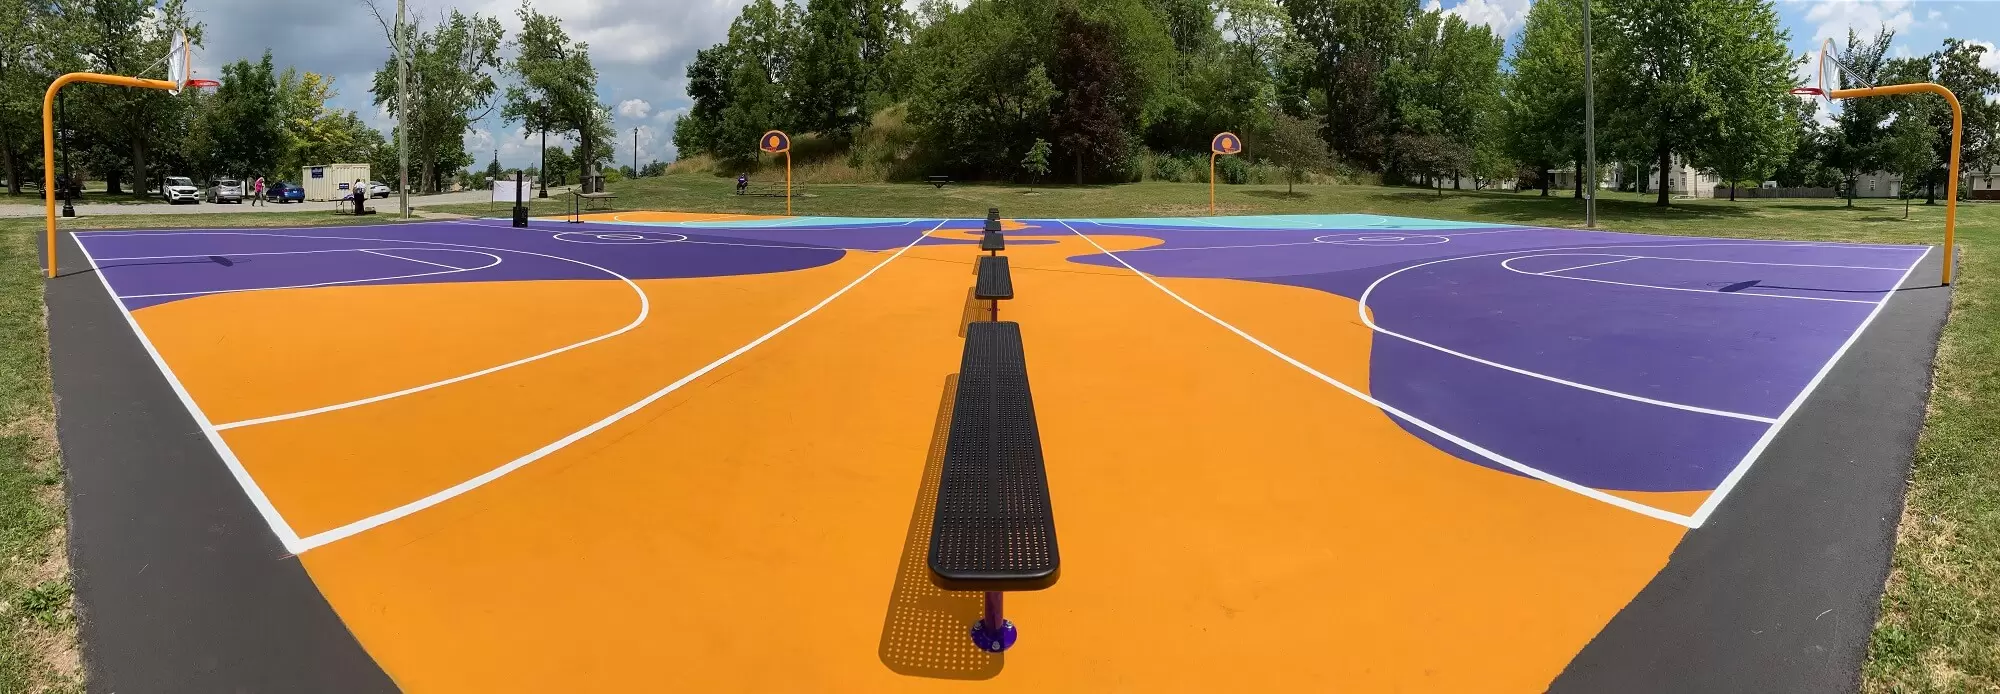 Reservoir Park basketball court mural